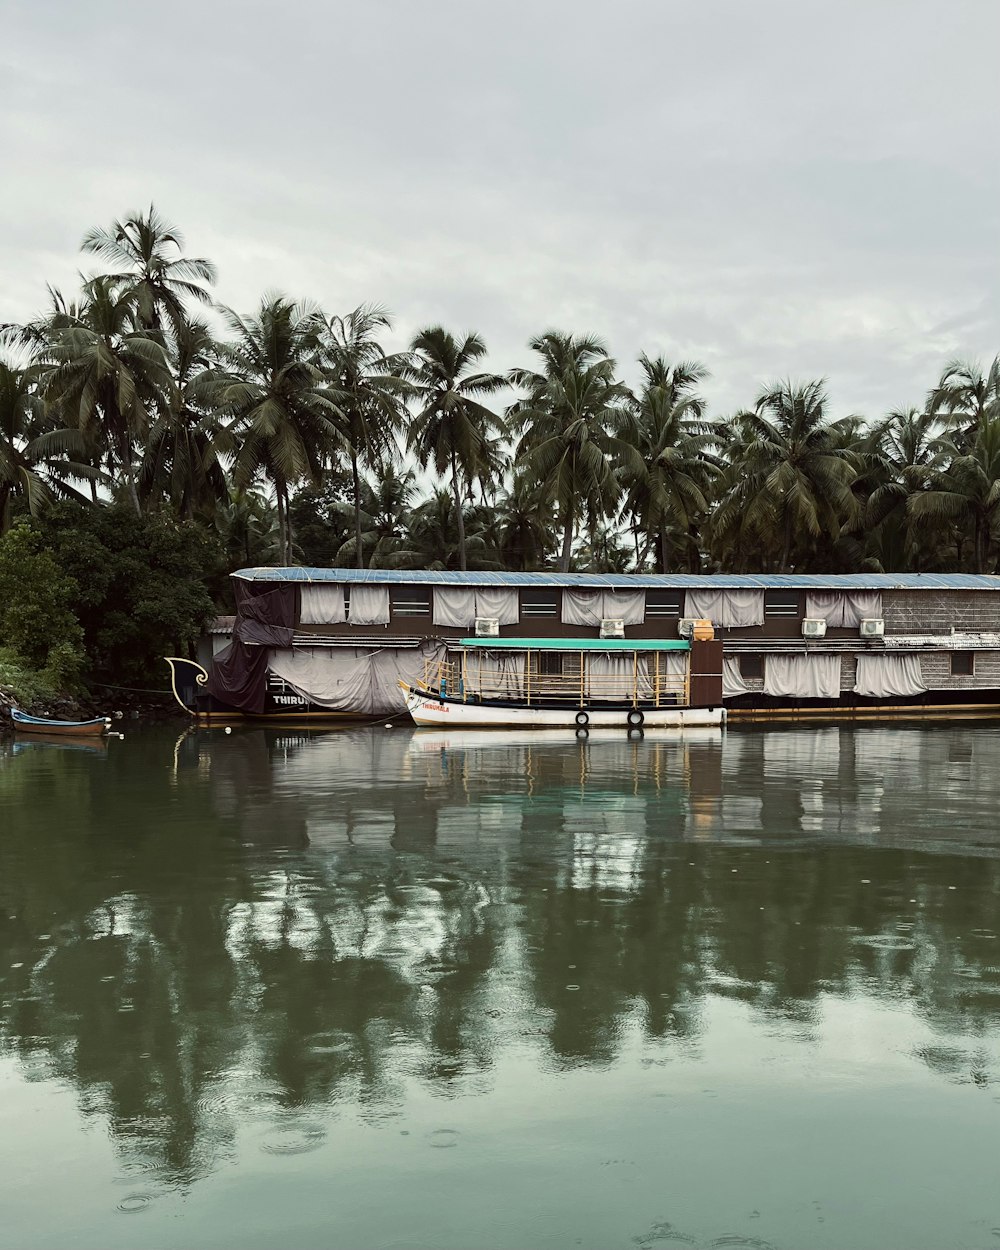 Una casa flotante está estacionada en el agua con palmeras en el fondo